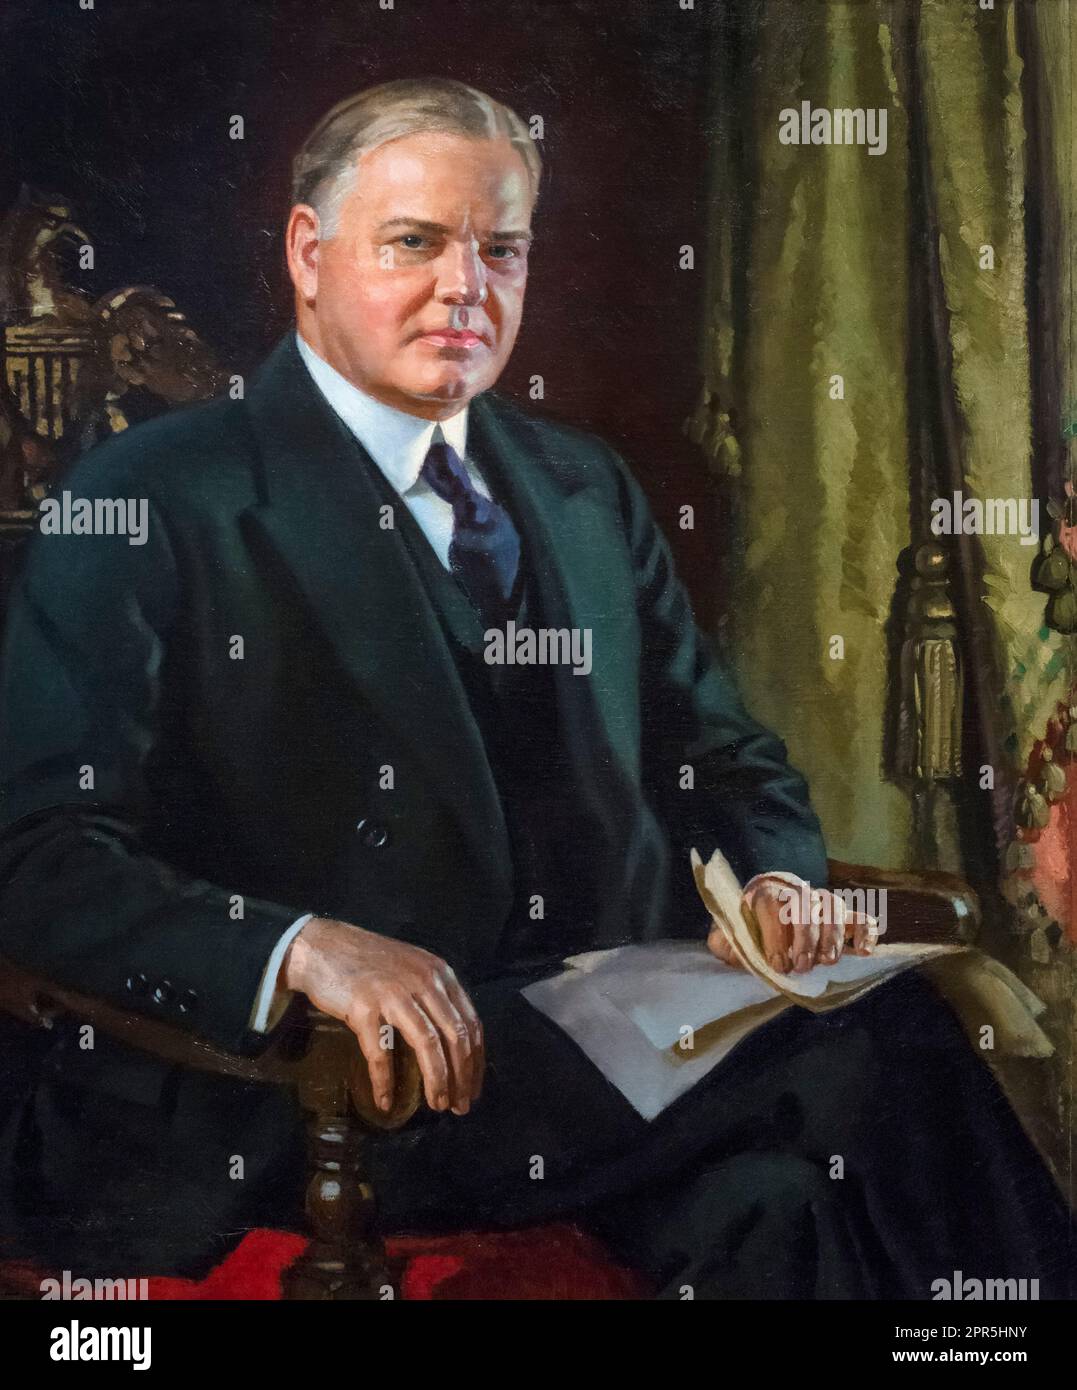 A cargo de Herbert Hoover. Retrato del 31st presidente de los EE.UU., Herbert Hoover (1874-1964) por Douglas Chandor, óleo sobre lienzo, 1931 Foto de stock